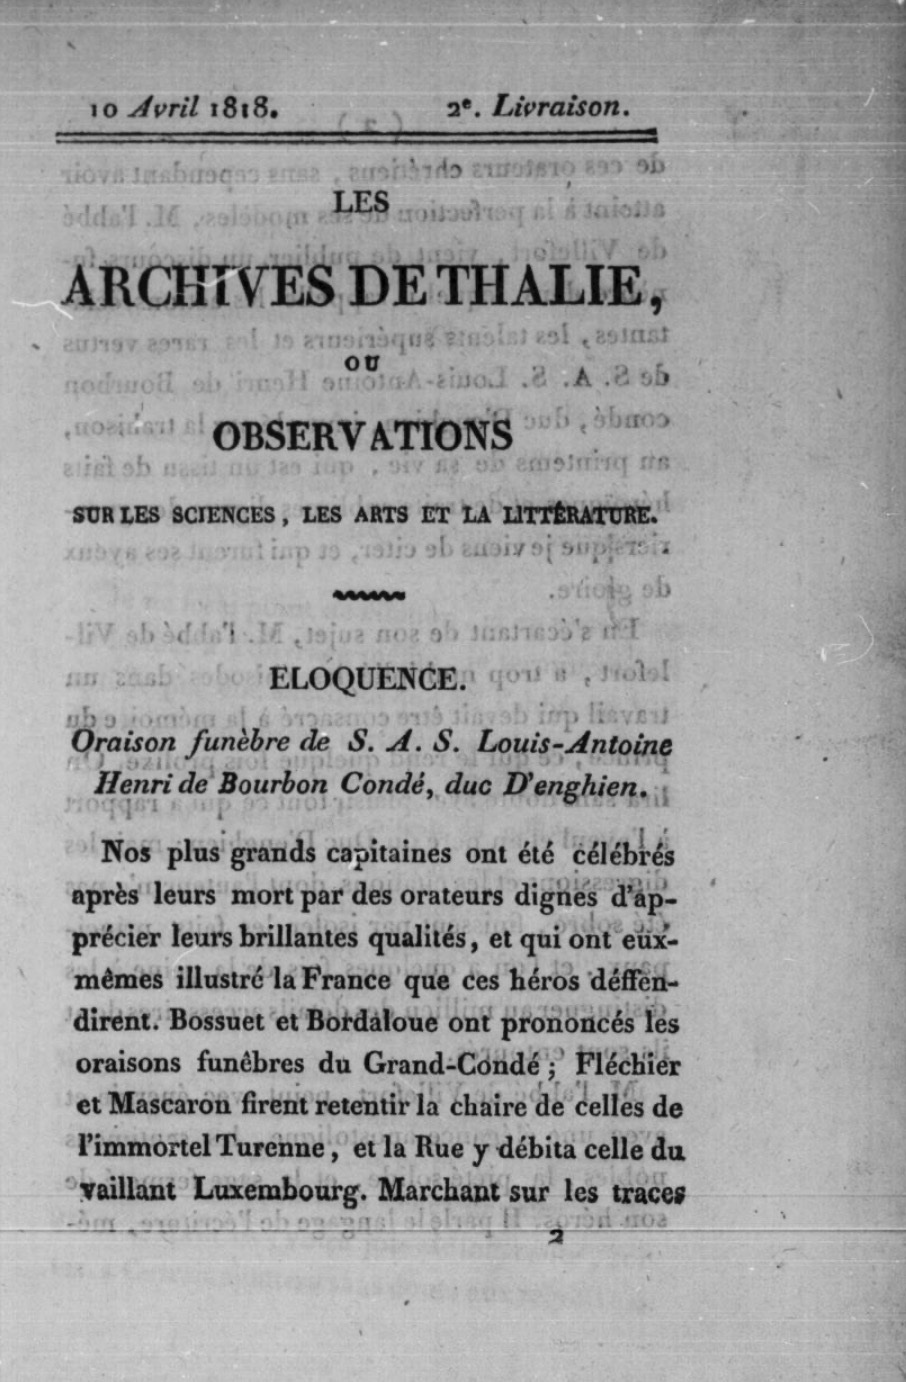 Les Archives de Thalie (1818-1822)